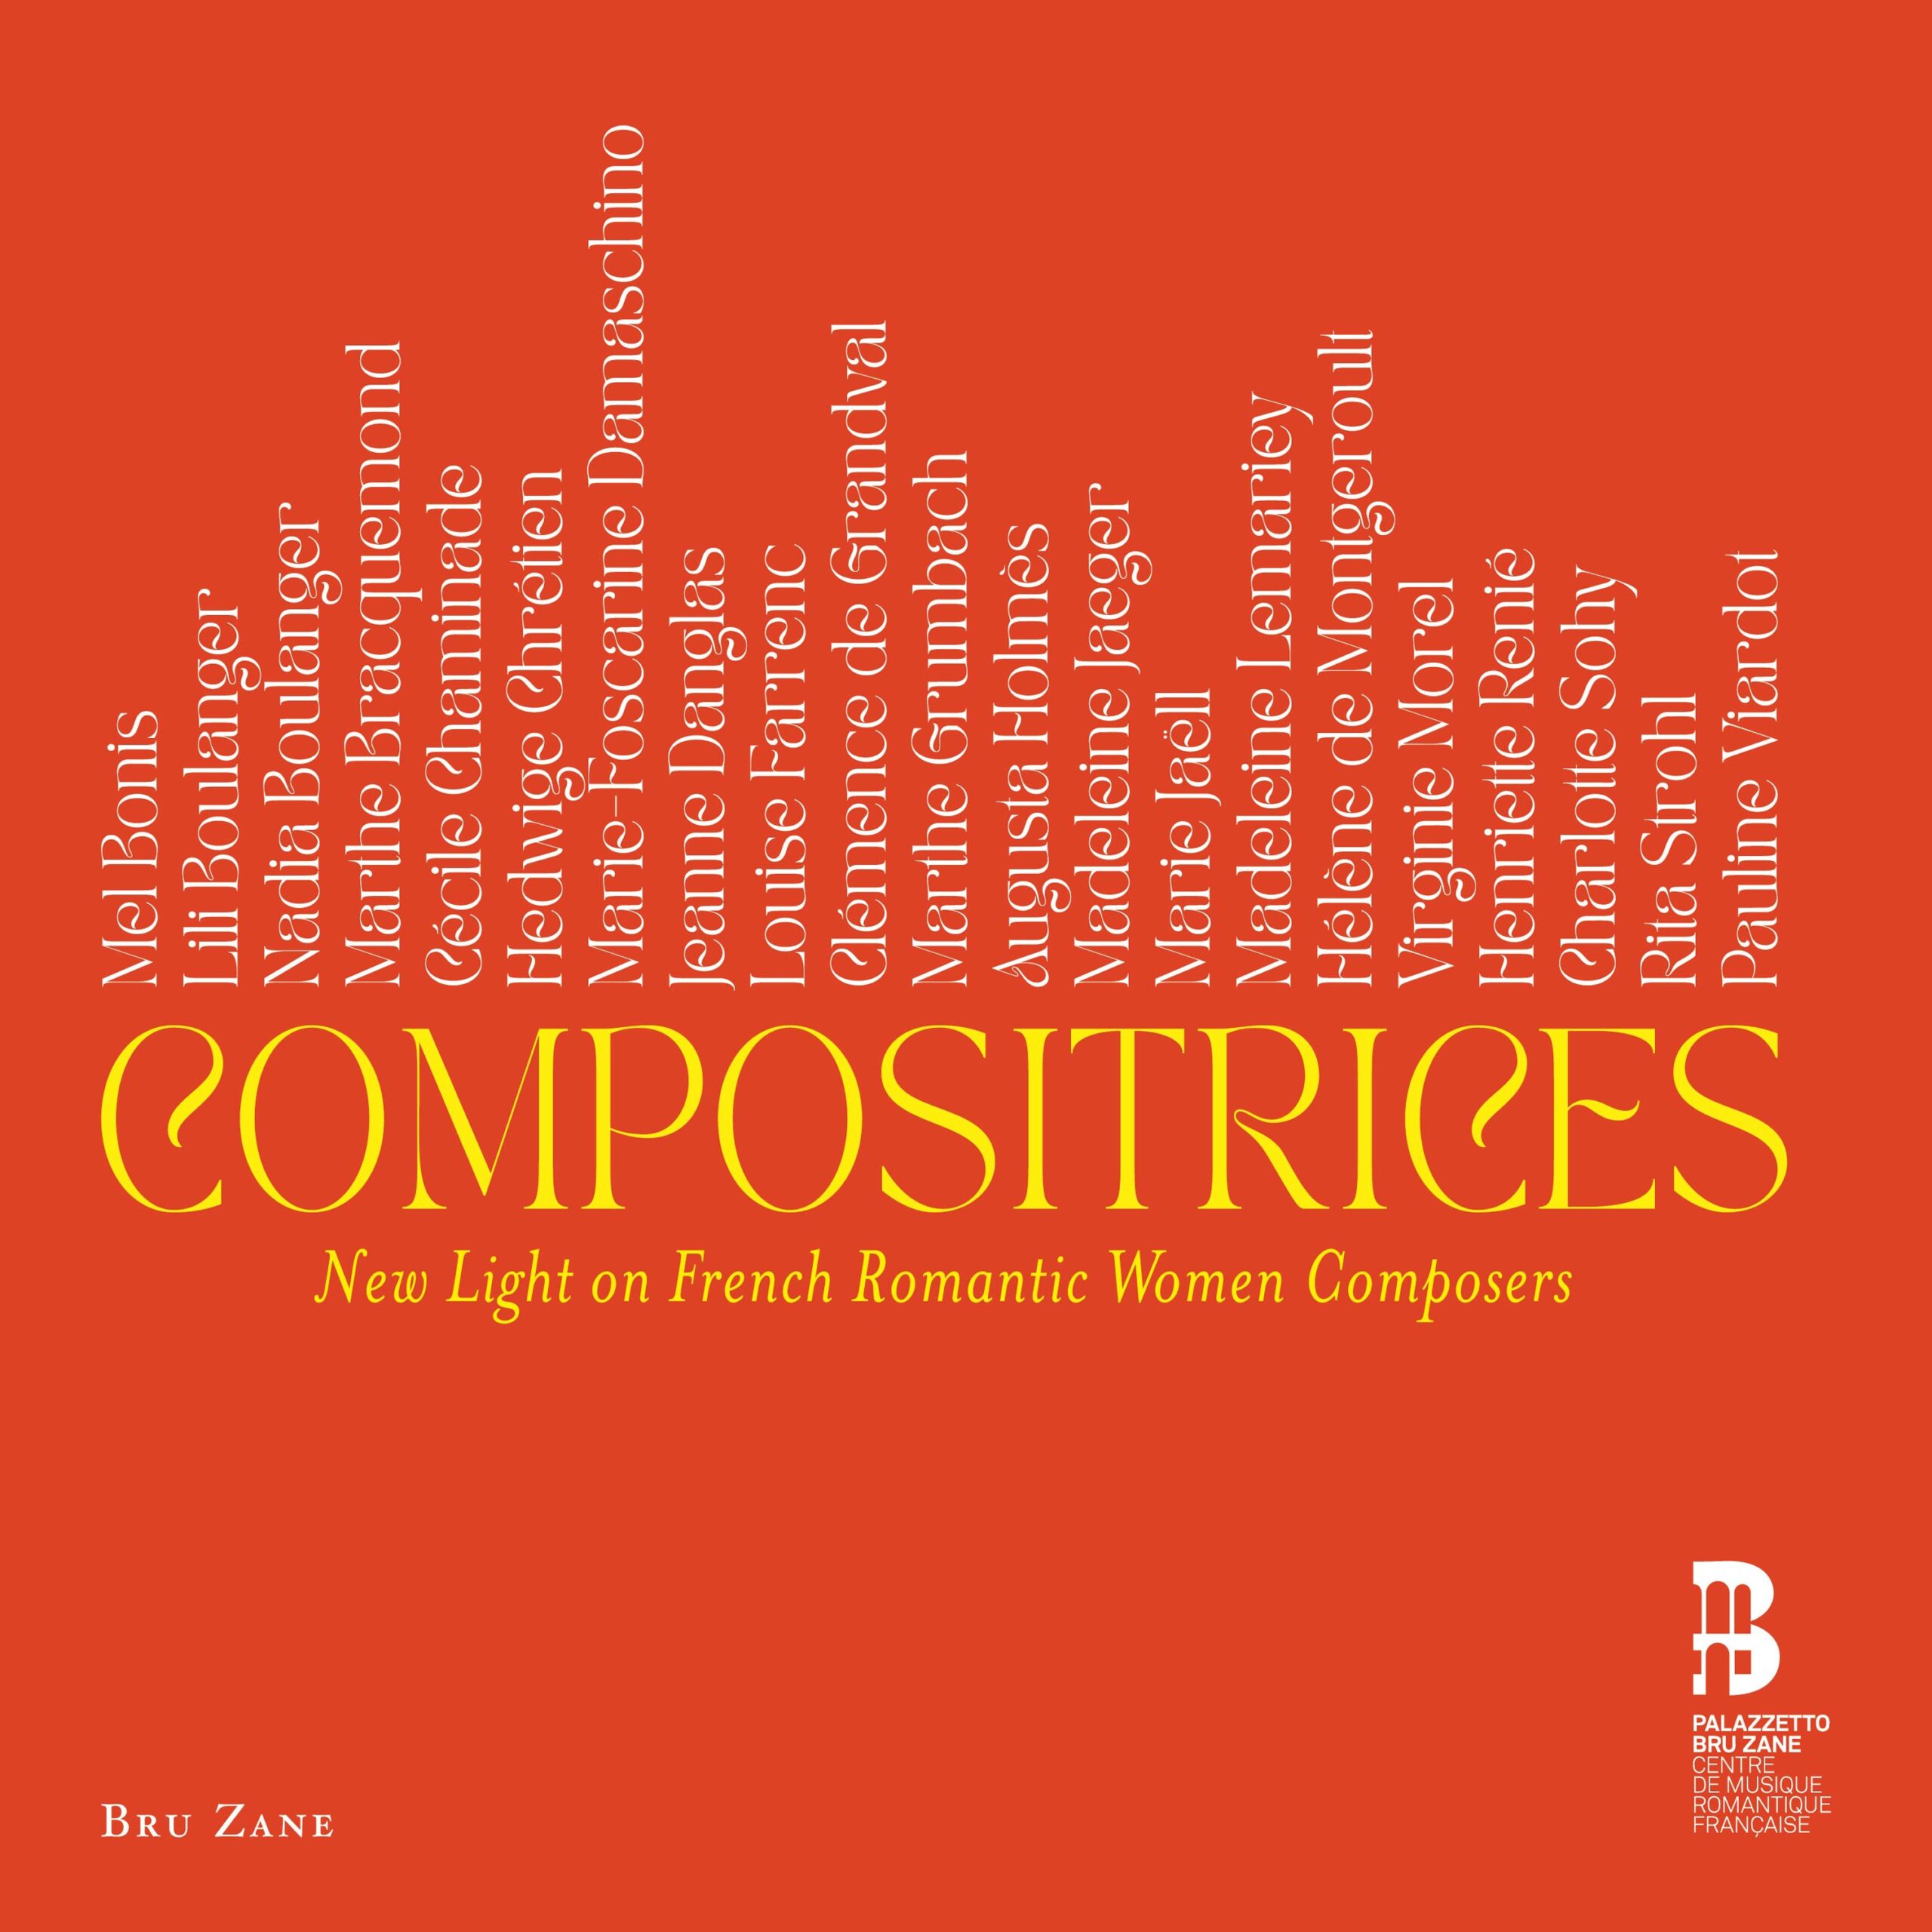 Coffret de 10 CD - Palazzetto Bru Zane - Compositrices française